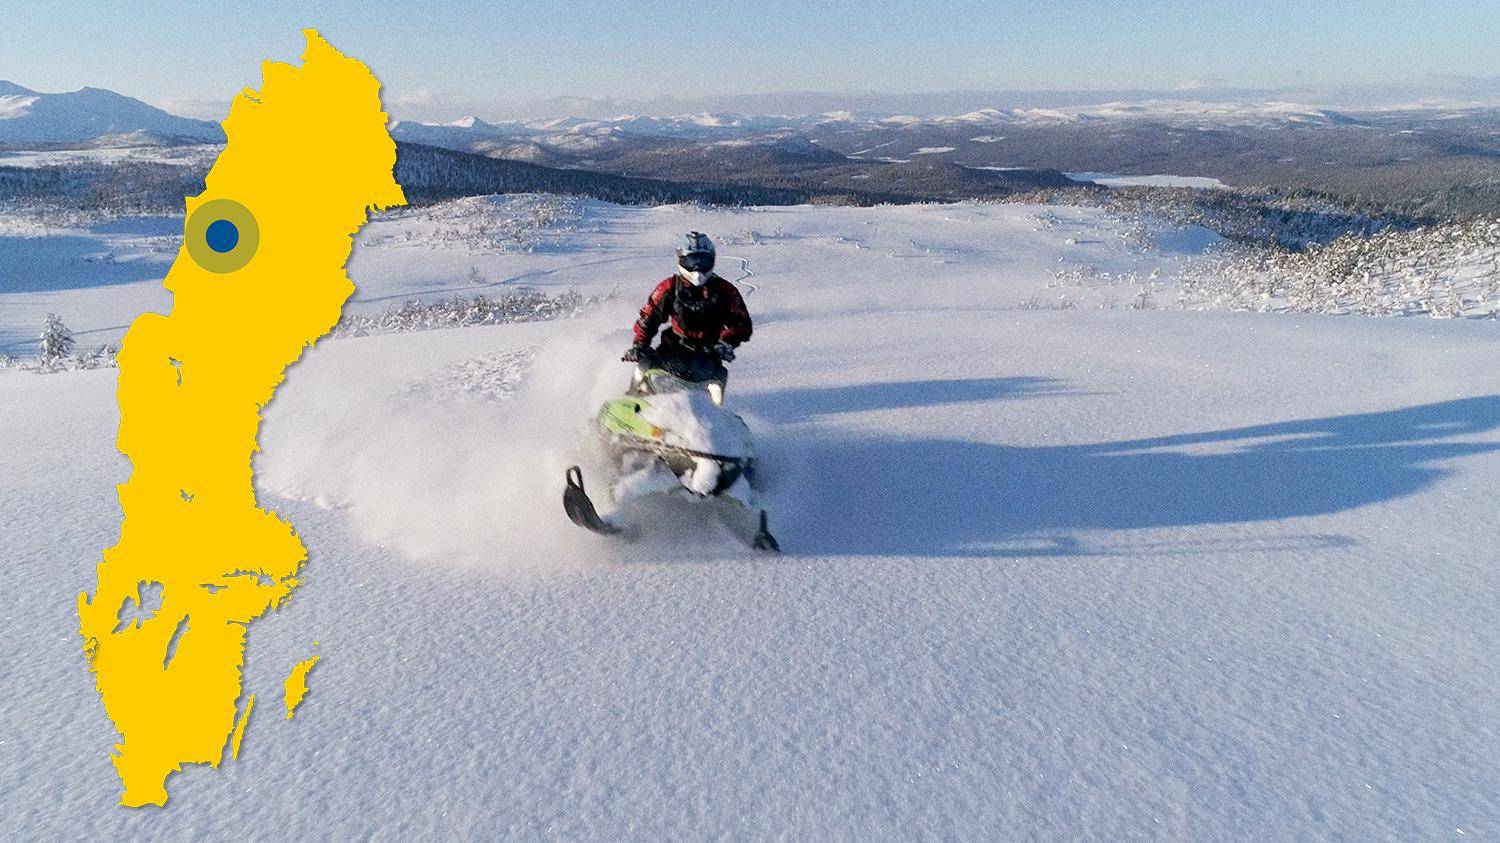 Een sneeuwscooter staat in een sneeuwlandschap. Op een geel kaartje is de locatie van Zweeds Lapland aangeduid.